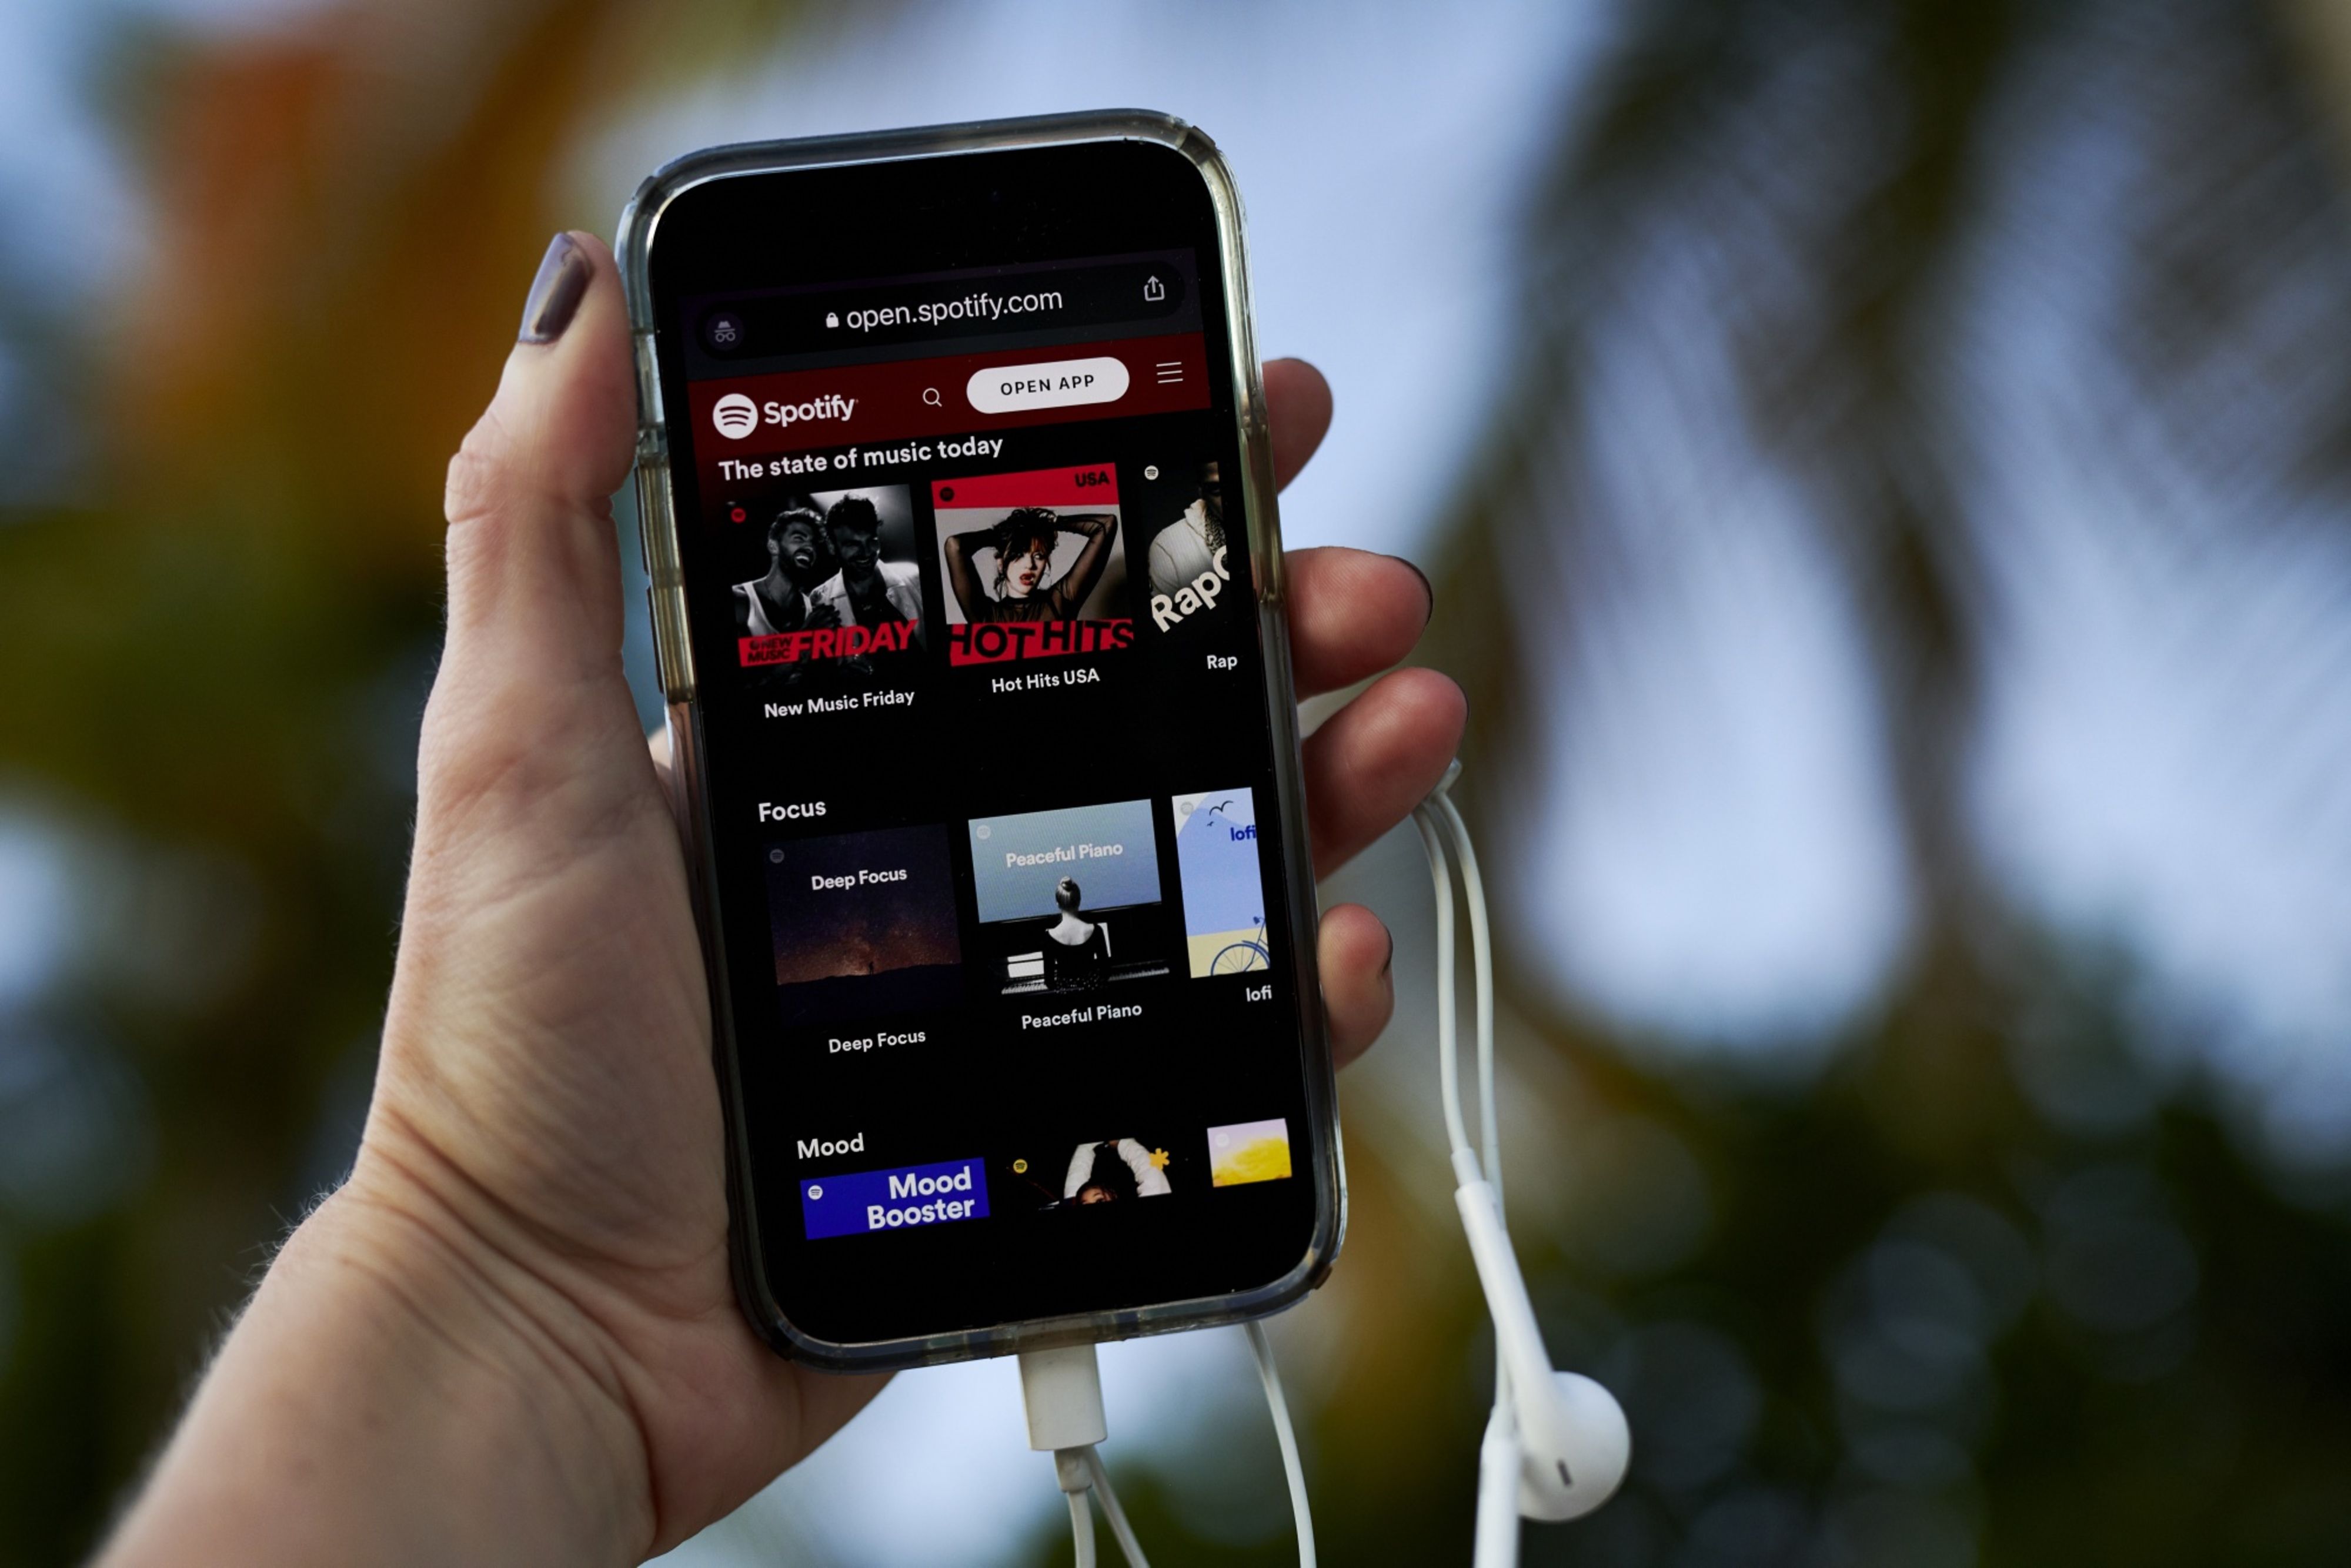 Spotify pode entrar no mercado de vídeos oferecendo mais que